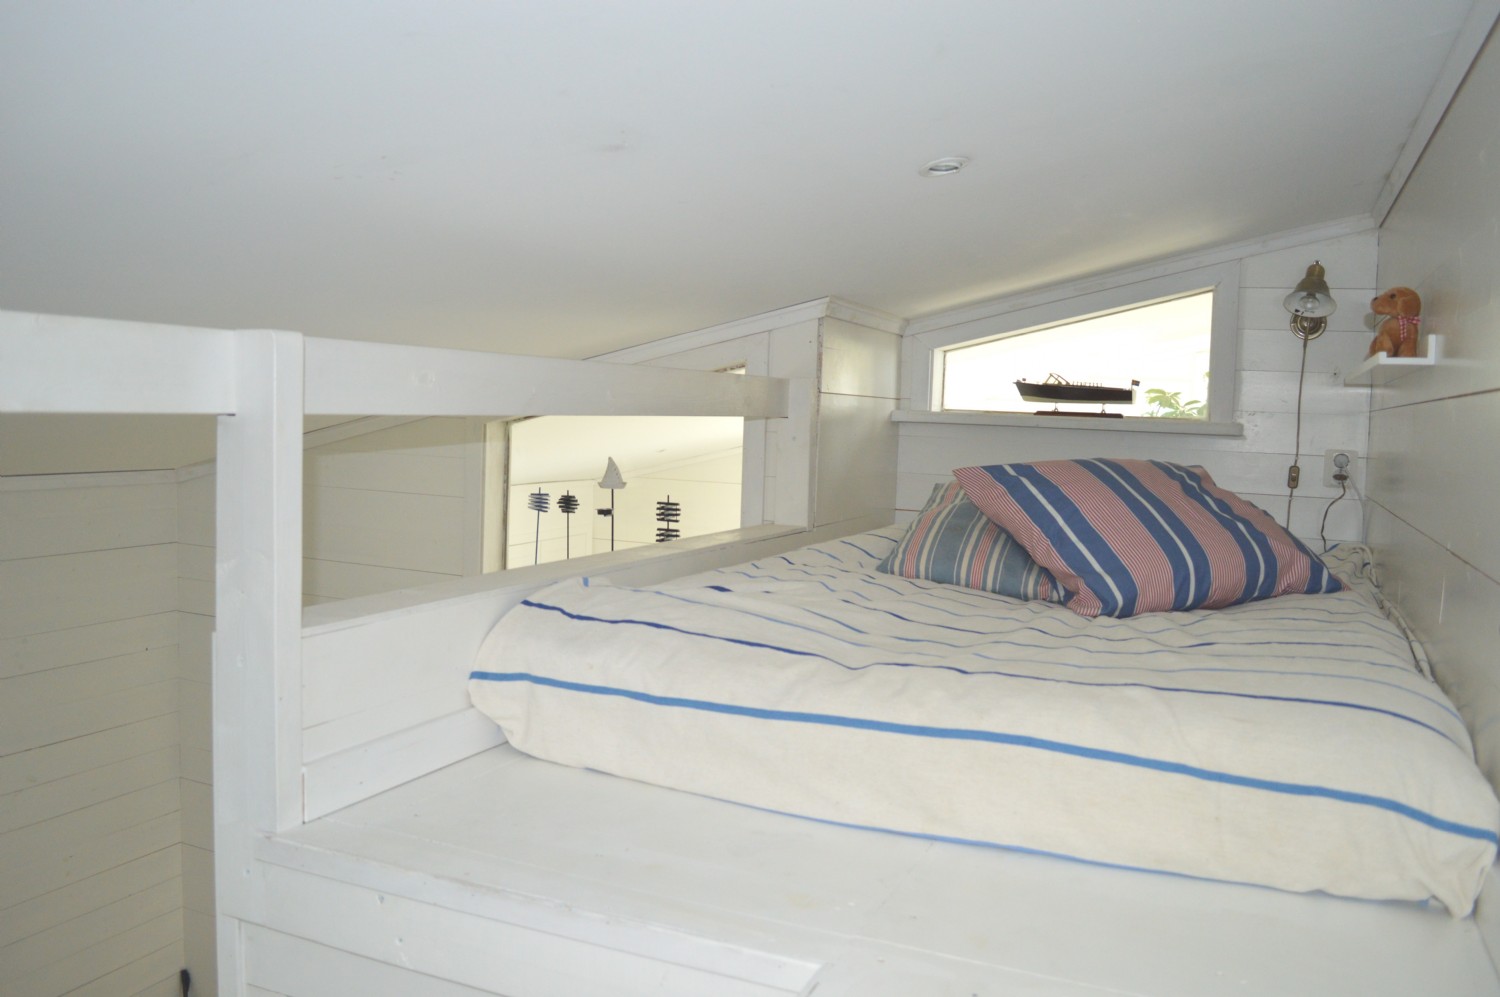 Sovrum 2 loft bädd/ Bed room 2 loft bed 